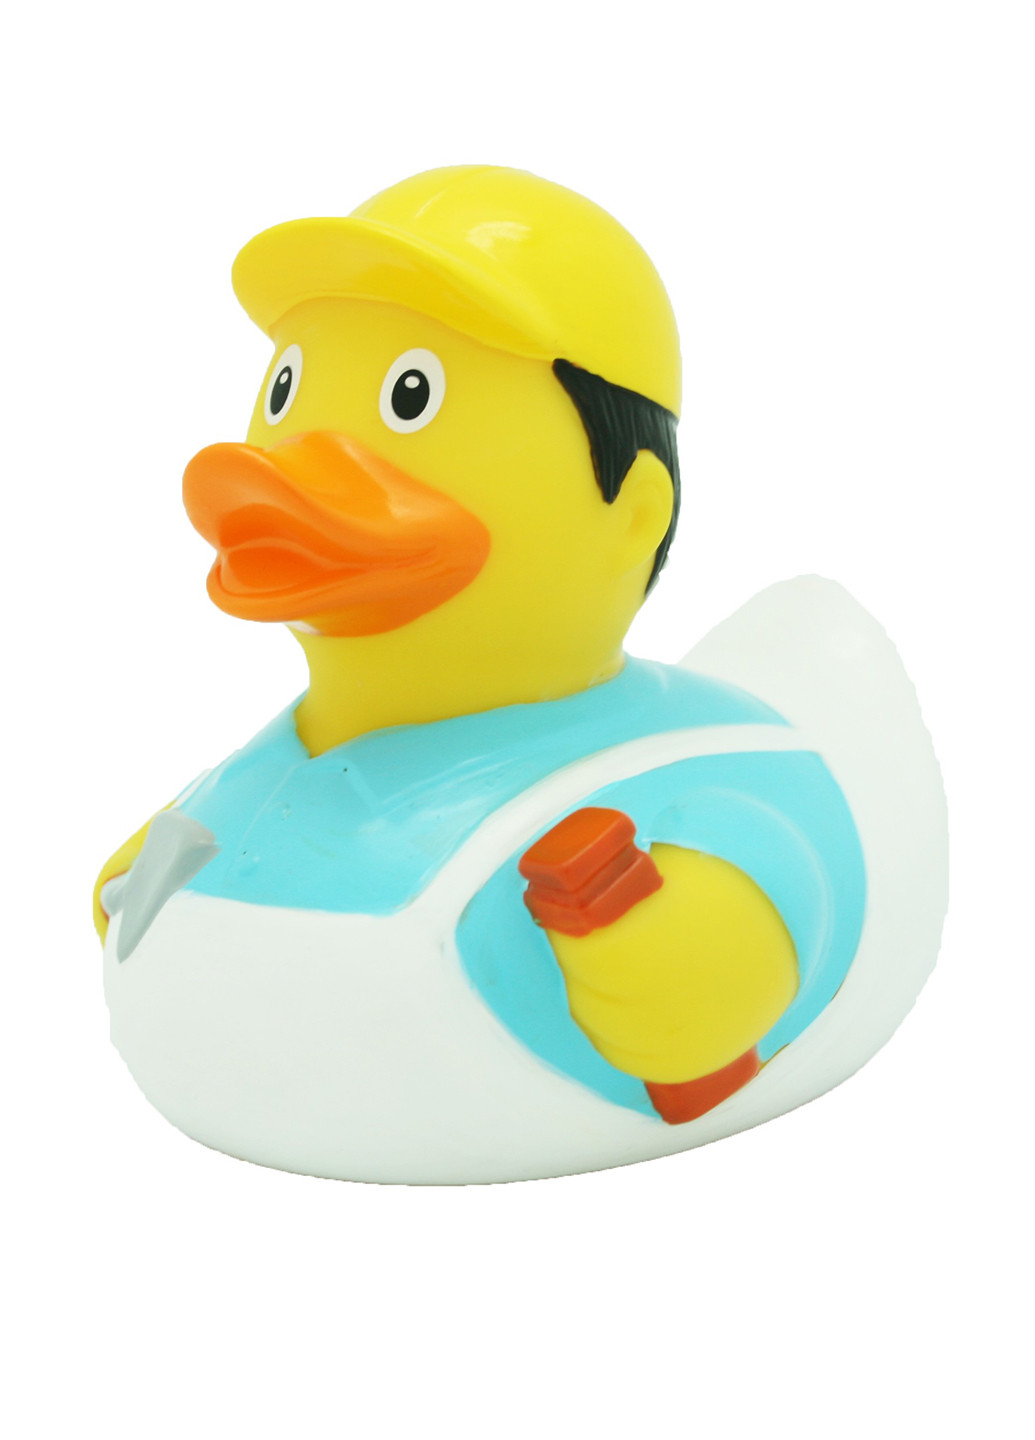 Іграшка для купання Качка Будівельник, 8,5x8,5x7,5 см Funny Ducks (250618732)